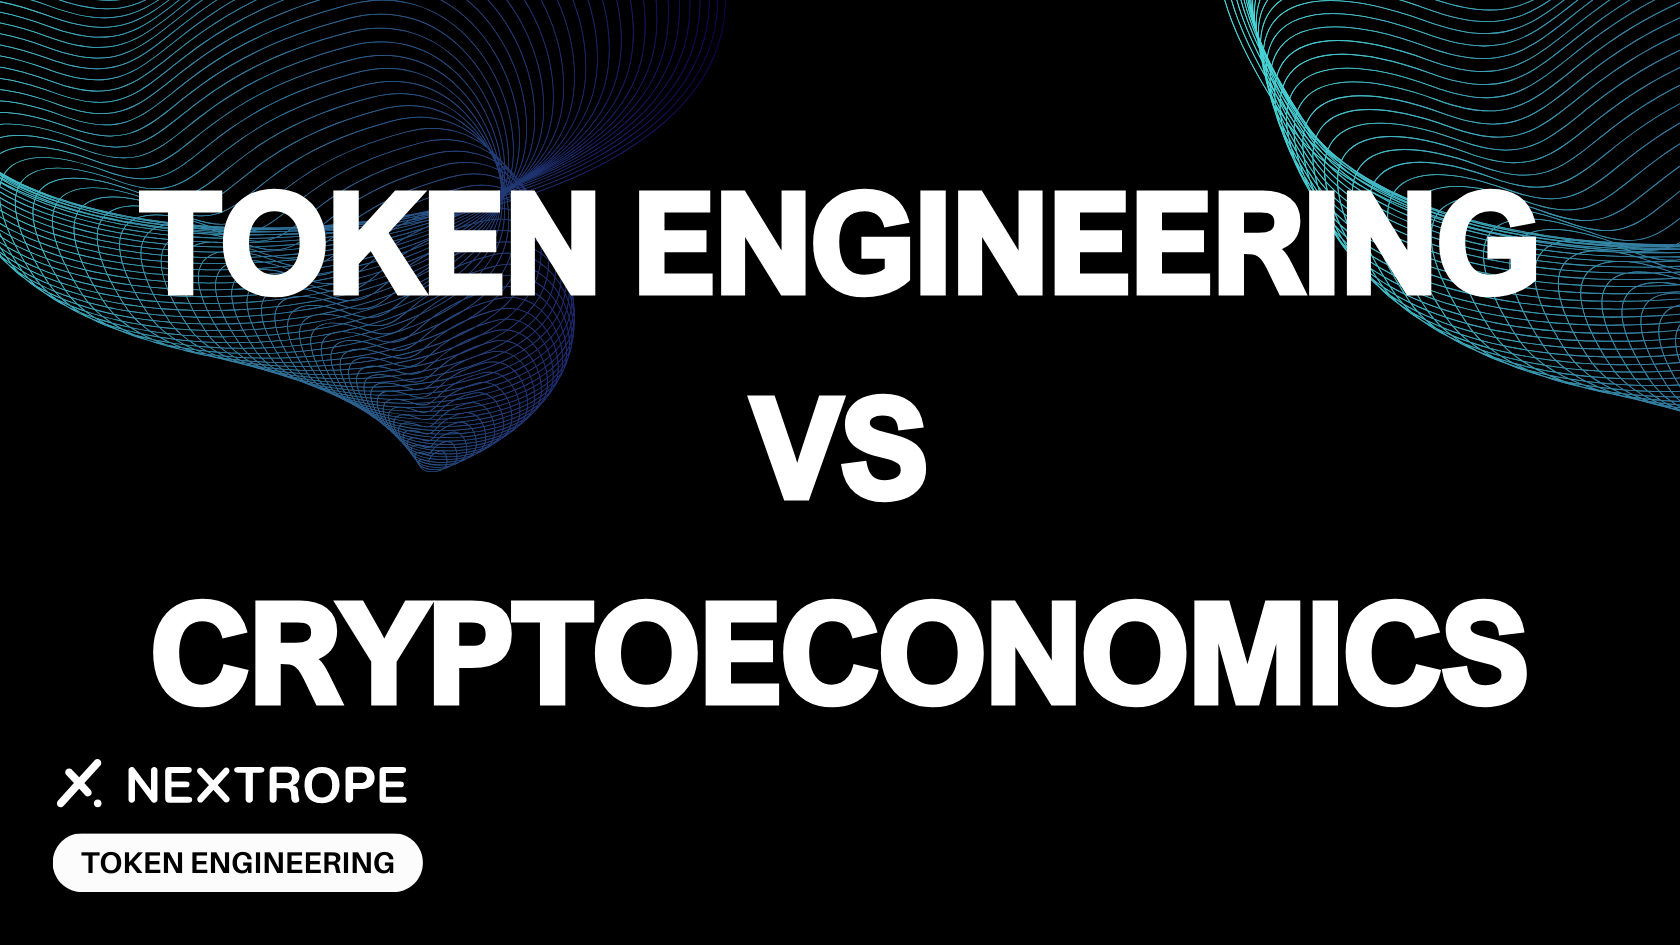 Cryptoeconomics vs Token Engineering: Are They the Same?